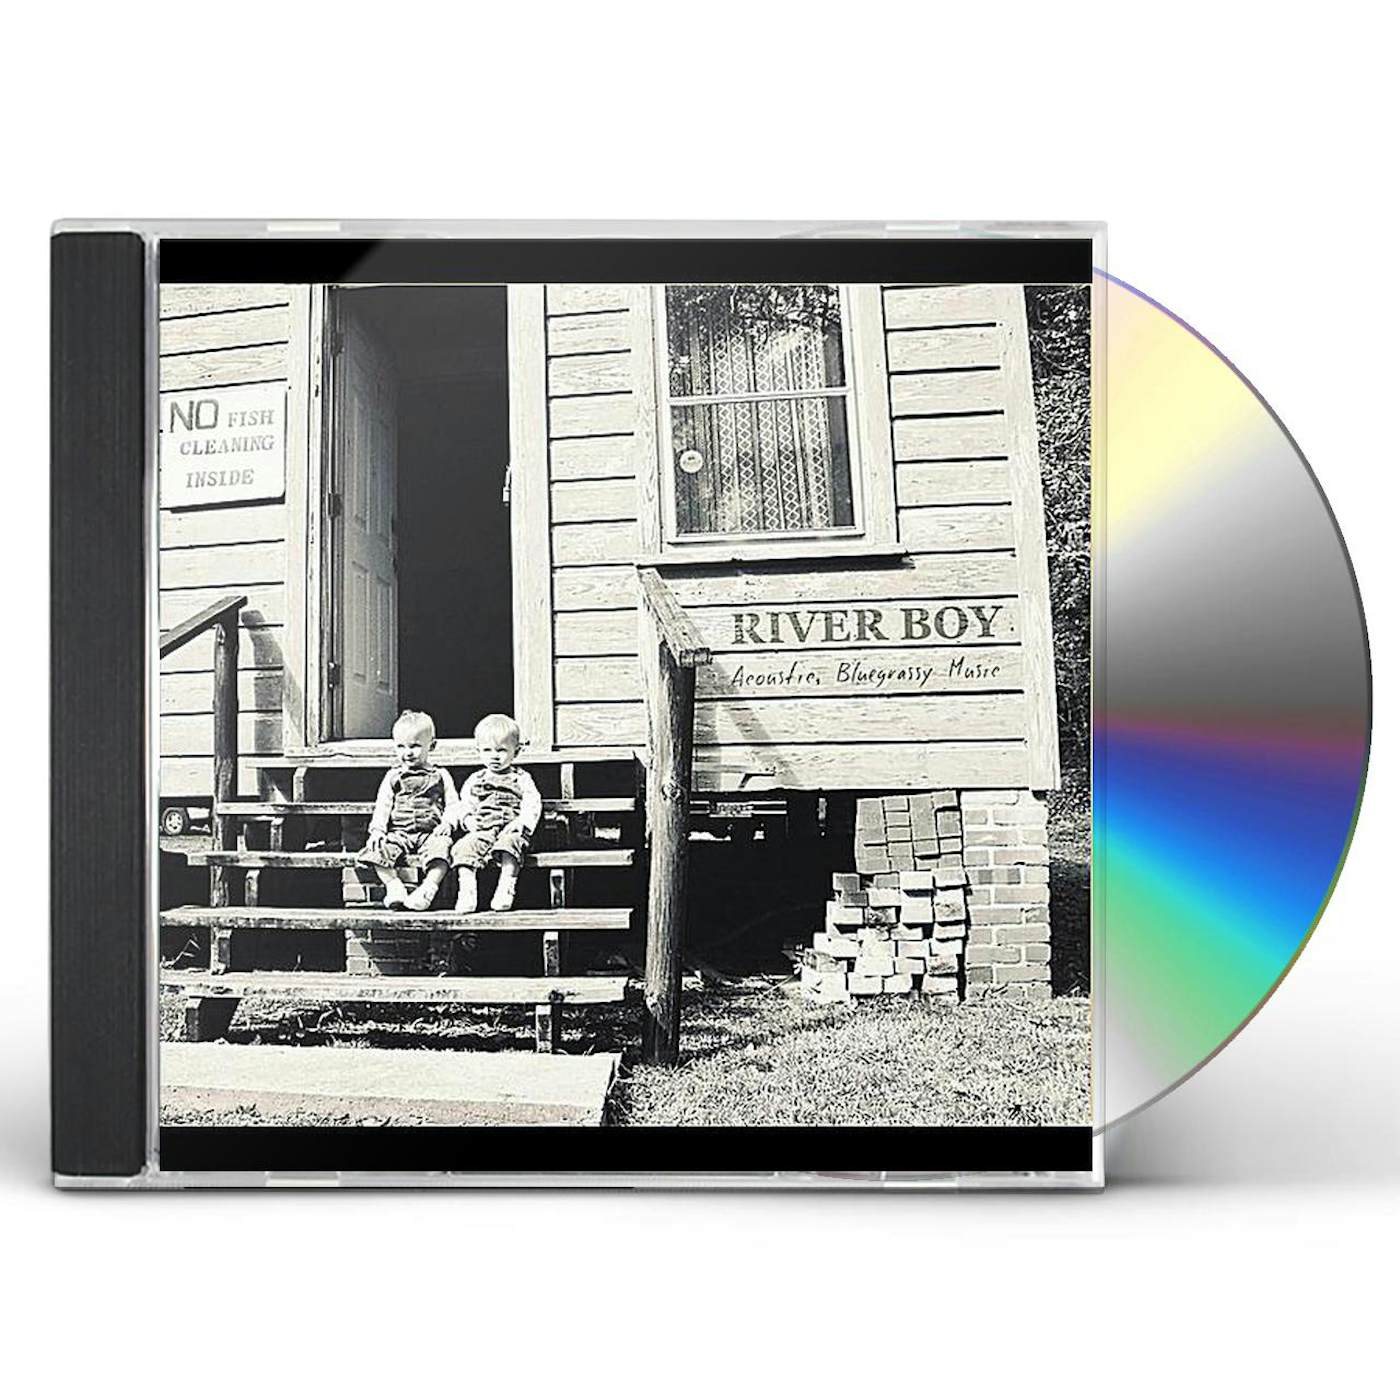 Cult of the Lamb (Original Soundtrack) - Album by River Boy